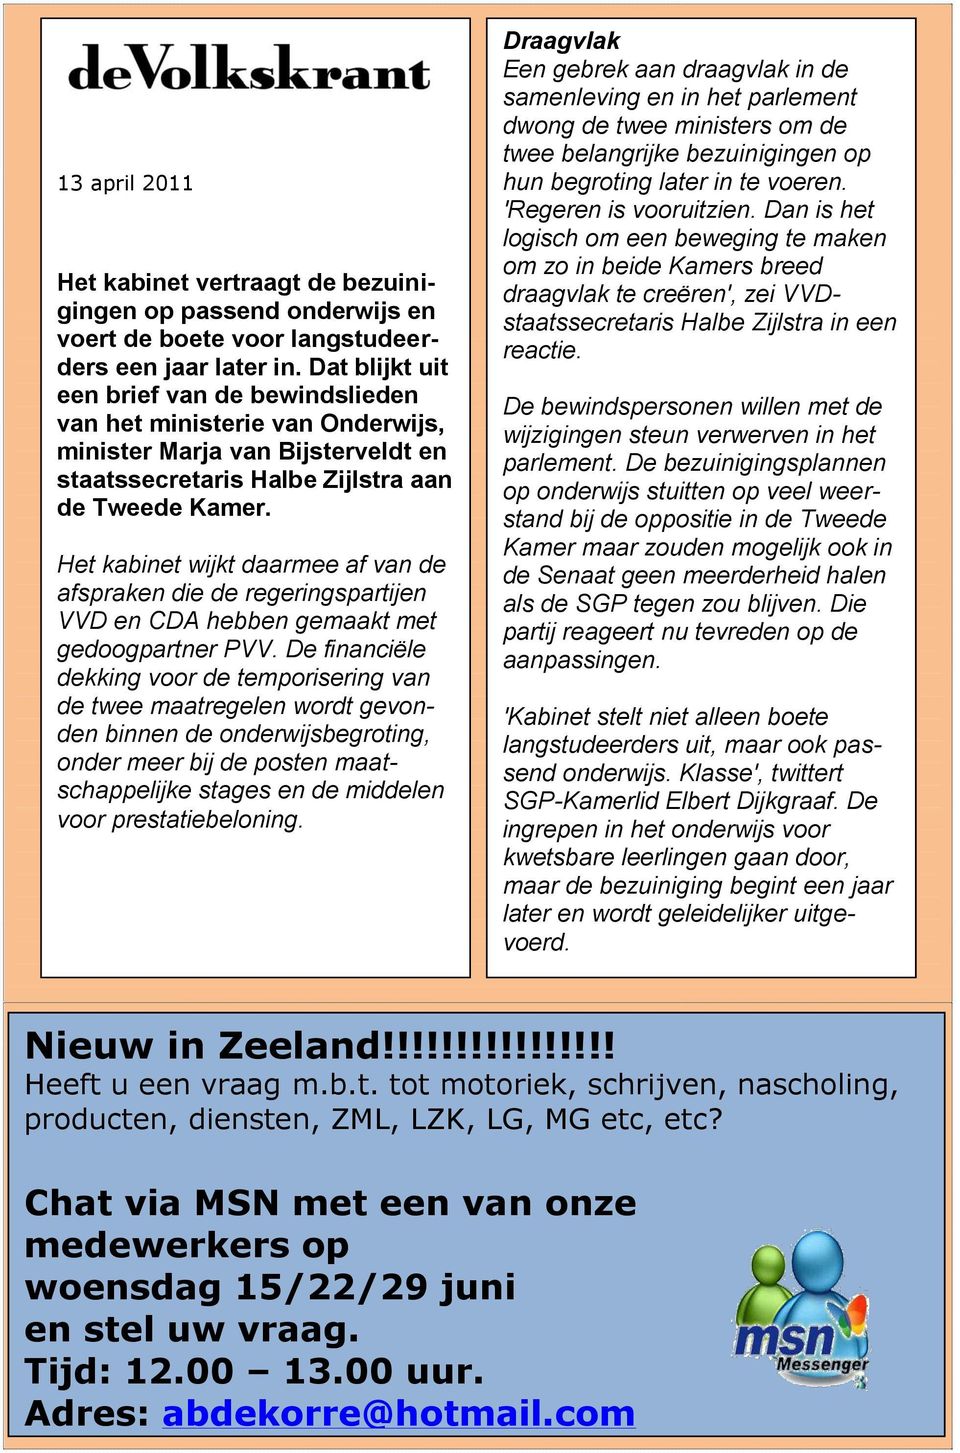 Het kabinet wijkt daarmee af van de afspraken die de regeringspartijen VVD en CDA hebben gemaakt met gedoogpartner PVV.